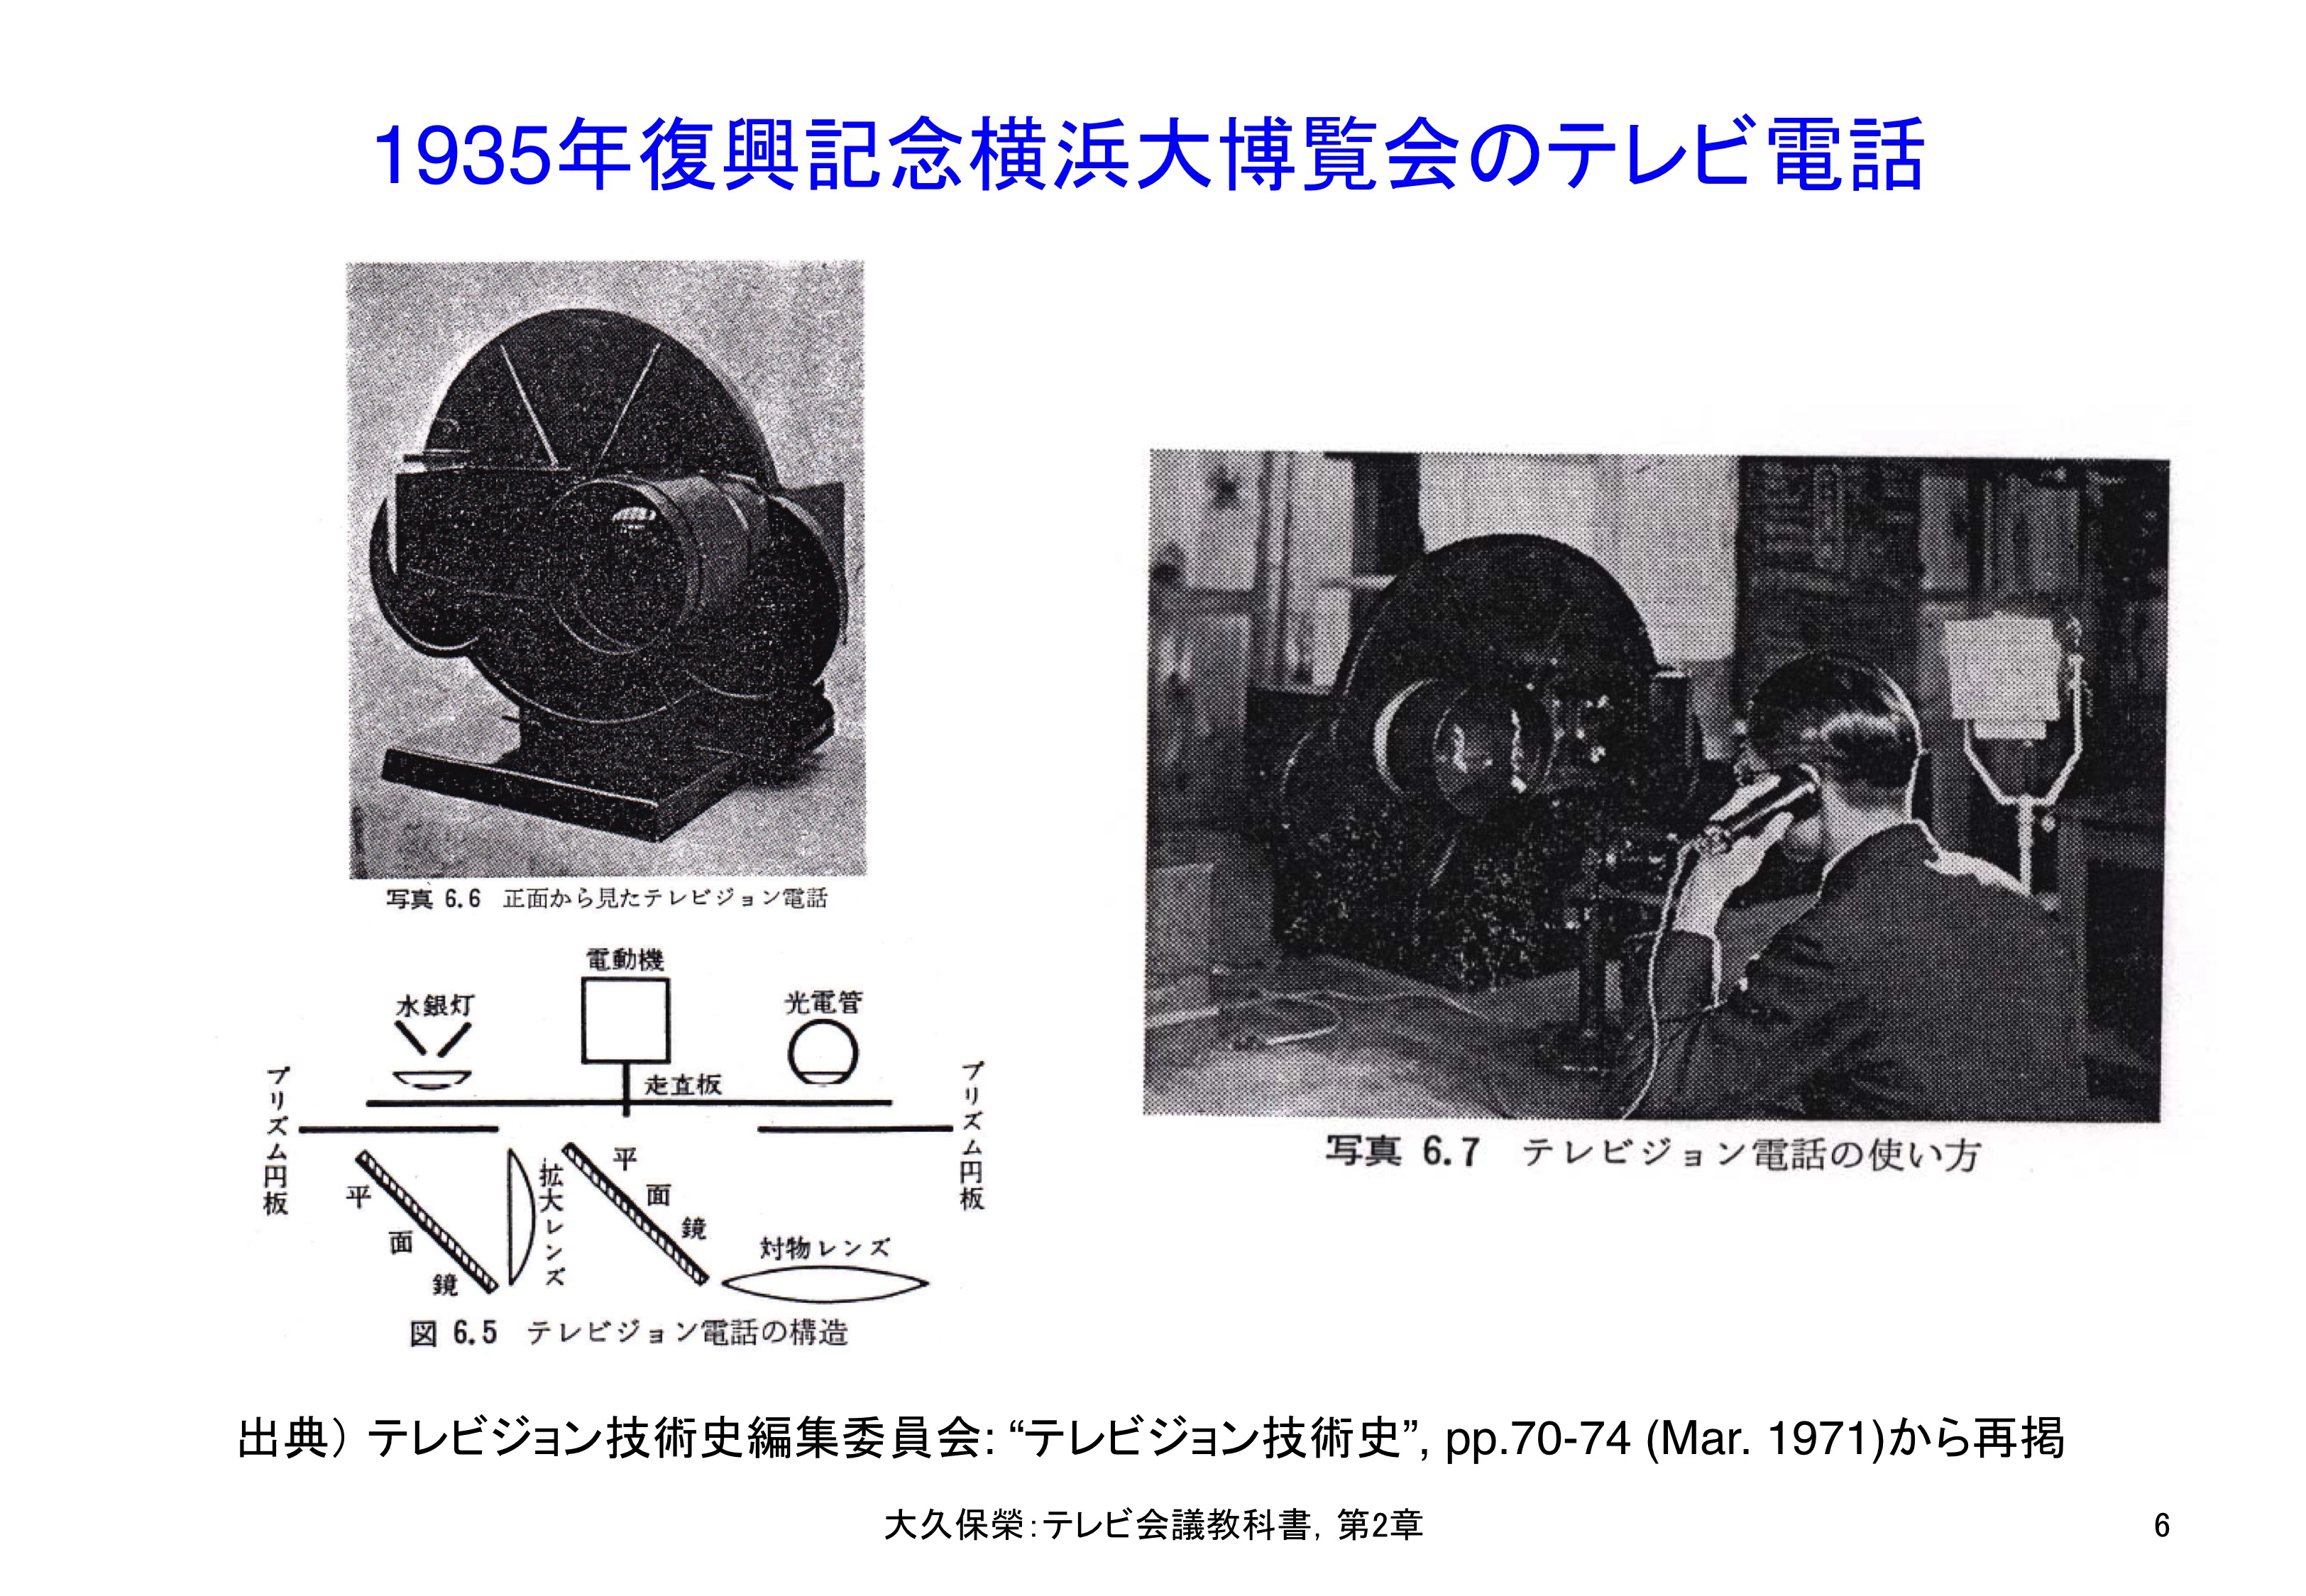 図2-6 復興記念横浜大博覧会（1935年）に展示されたテレビ電話